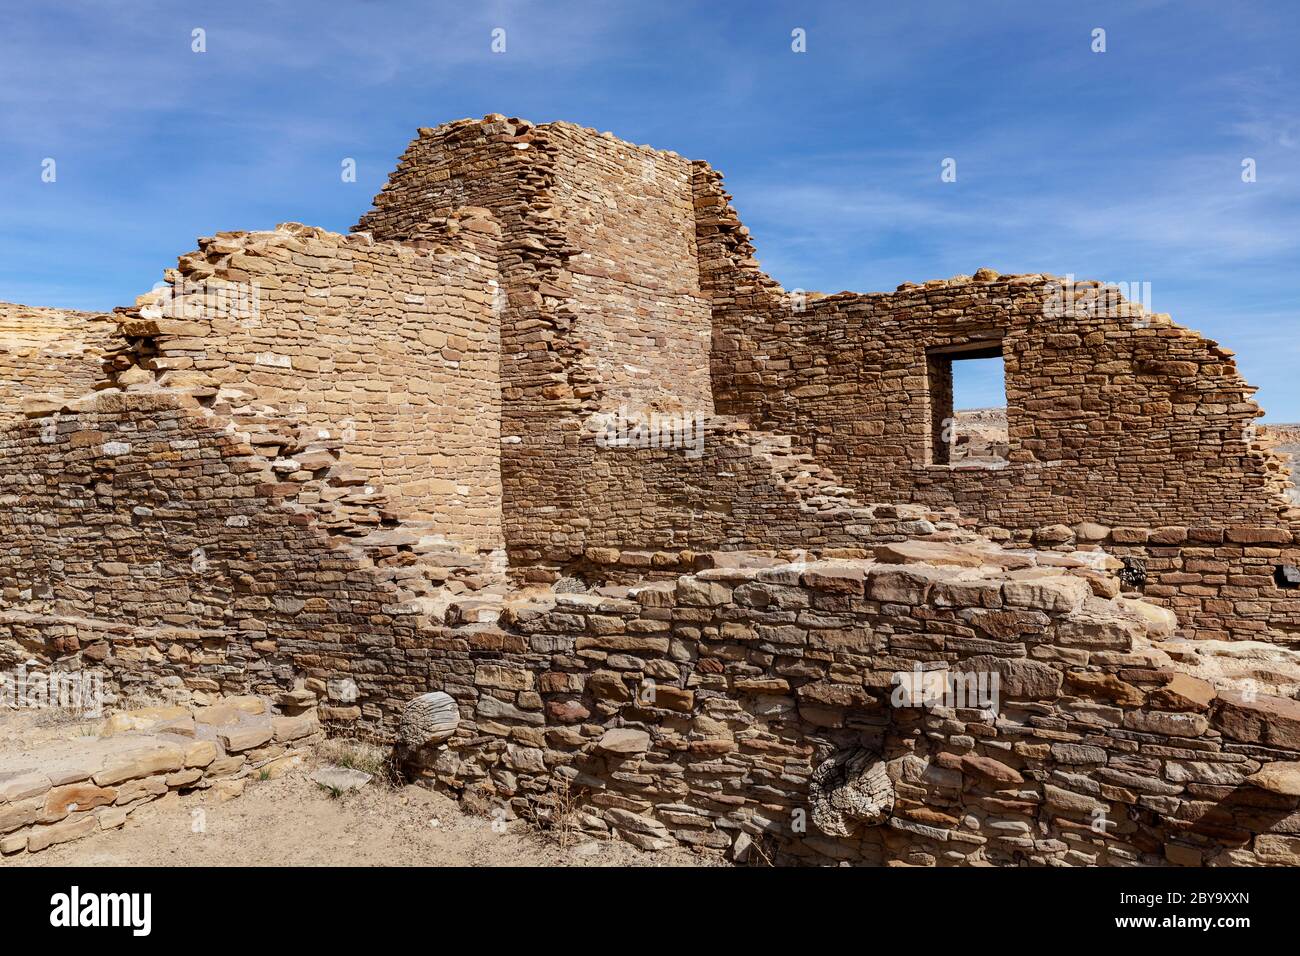 NM00599-00...NEW MEXICO - Mauerwerk Steinmauern Pueblo De Arroyo gebaut von den frühen Chaco Menschen. Chaco Kultur National Historic Park. Stockfoto